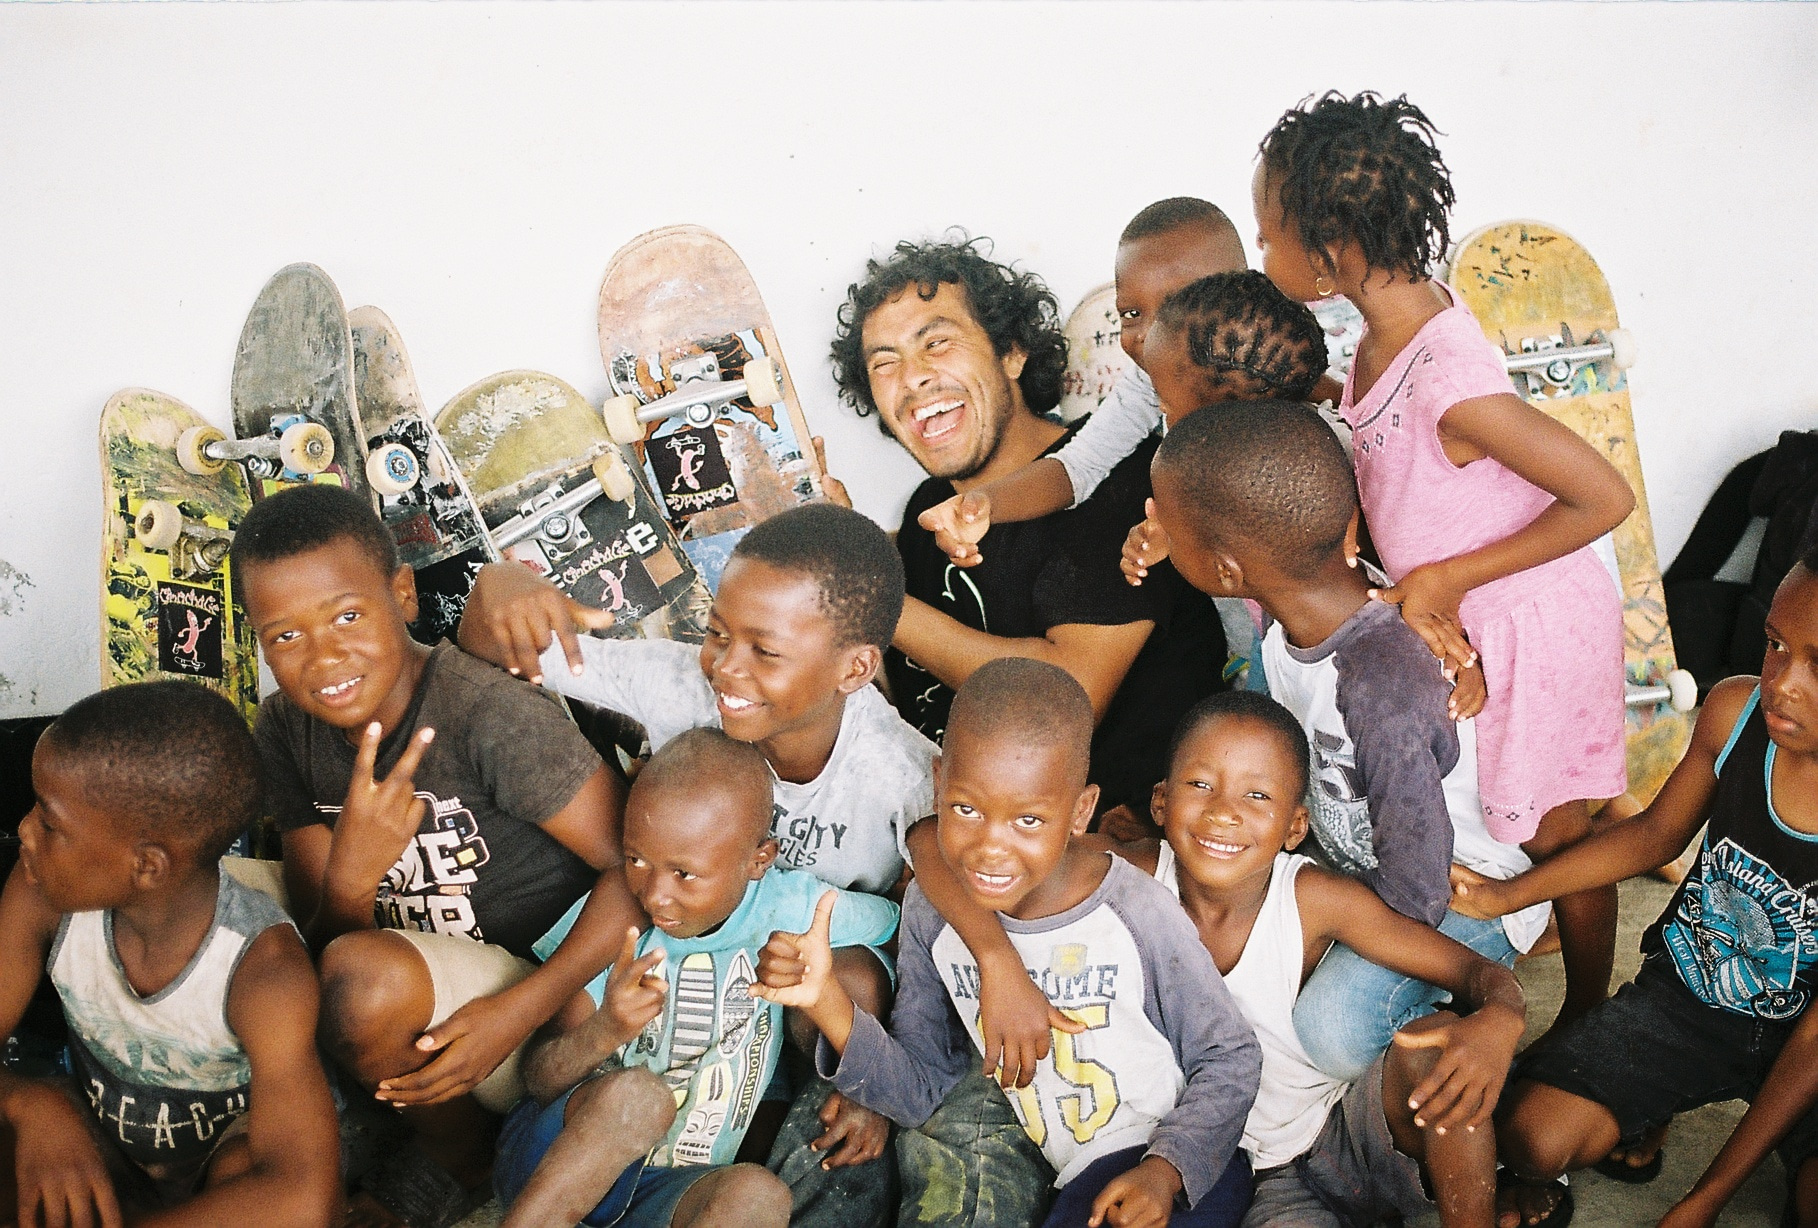 Fotograf a zakladatel neziskové organizace Skate World Better Martin Loužecký s africkými dětmi.